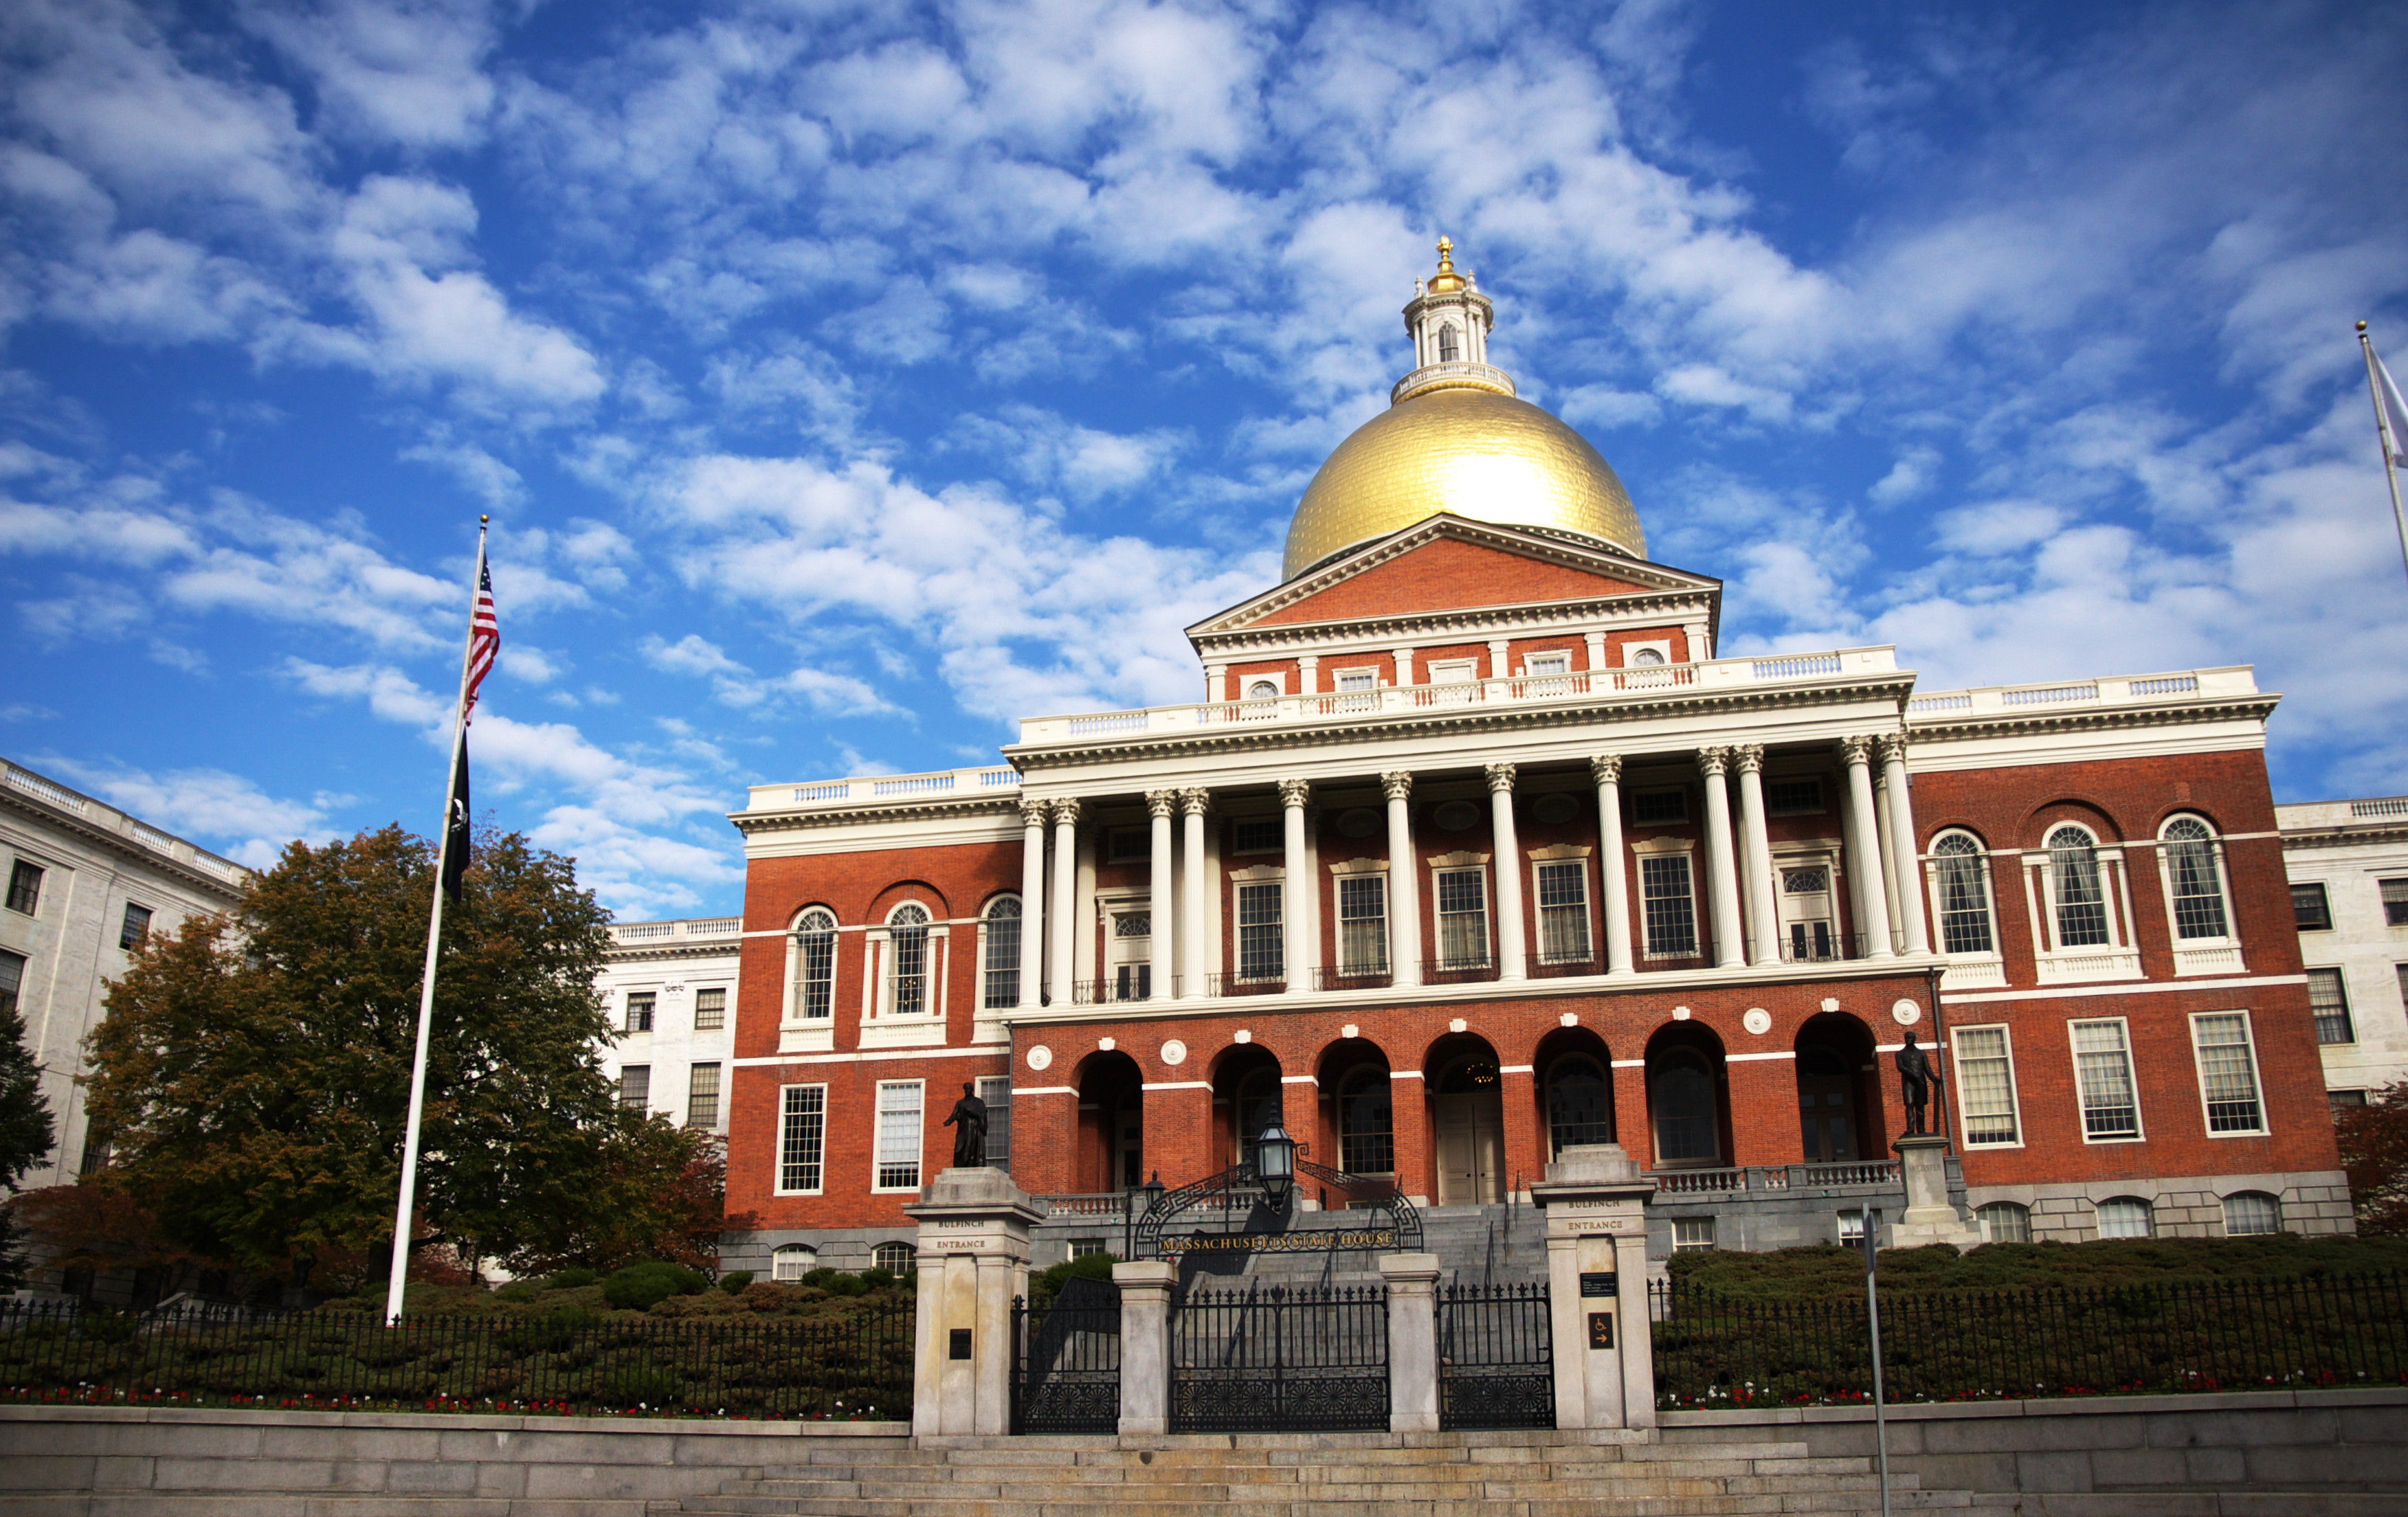 http://commons.wikimedia.org/wiki/File:Massachusetts_Statehouse.jpg